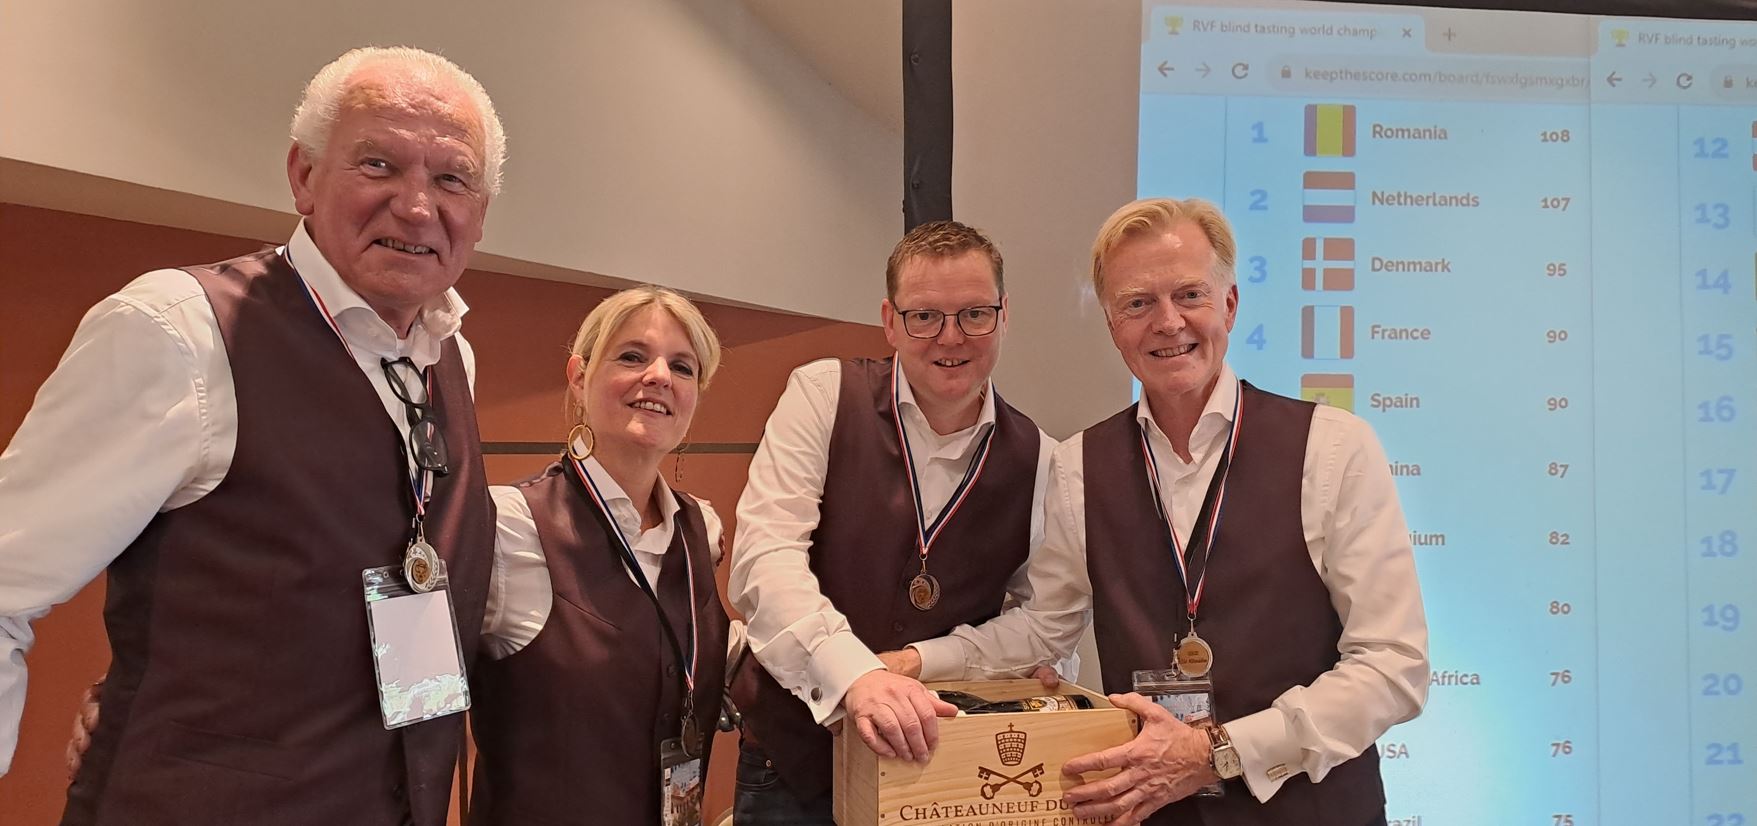 Nederlands team bijna winnaar op WK Blindproeven van wijn